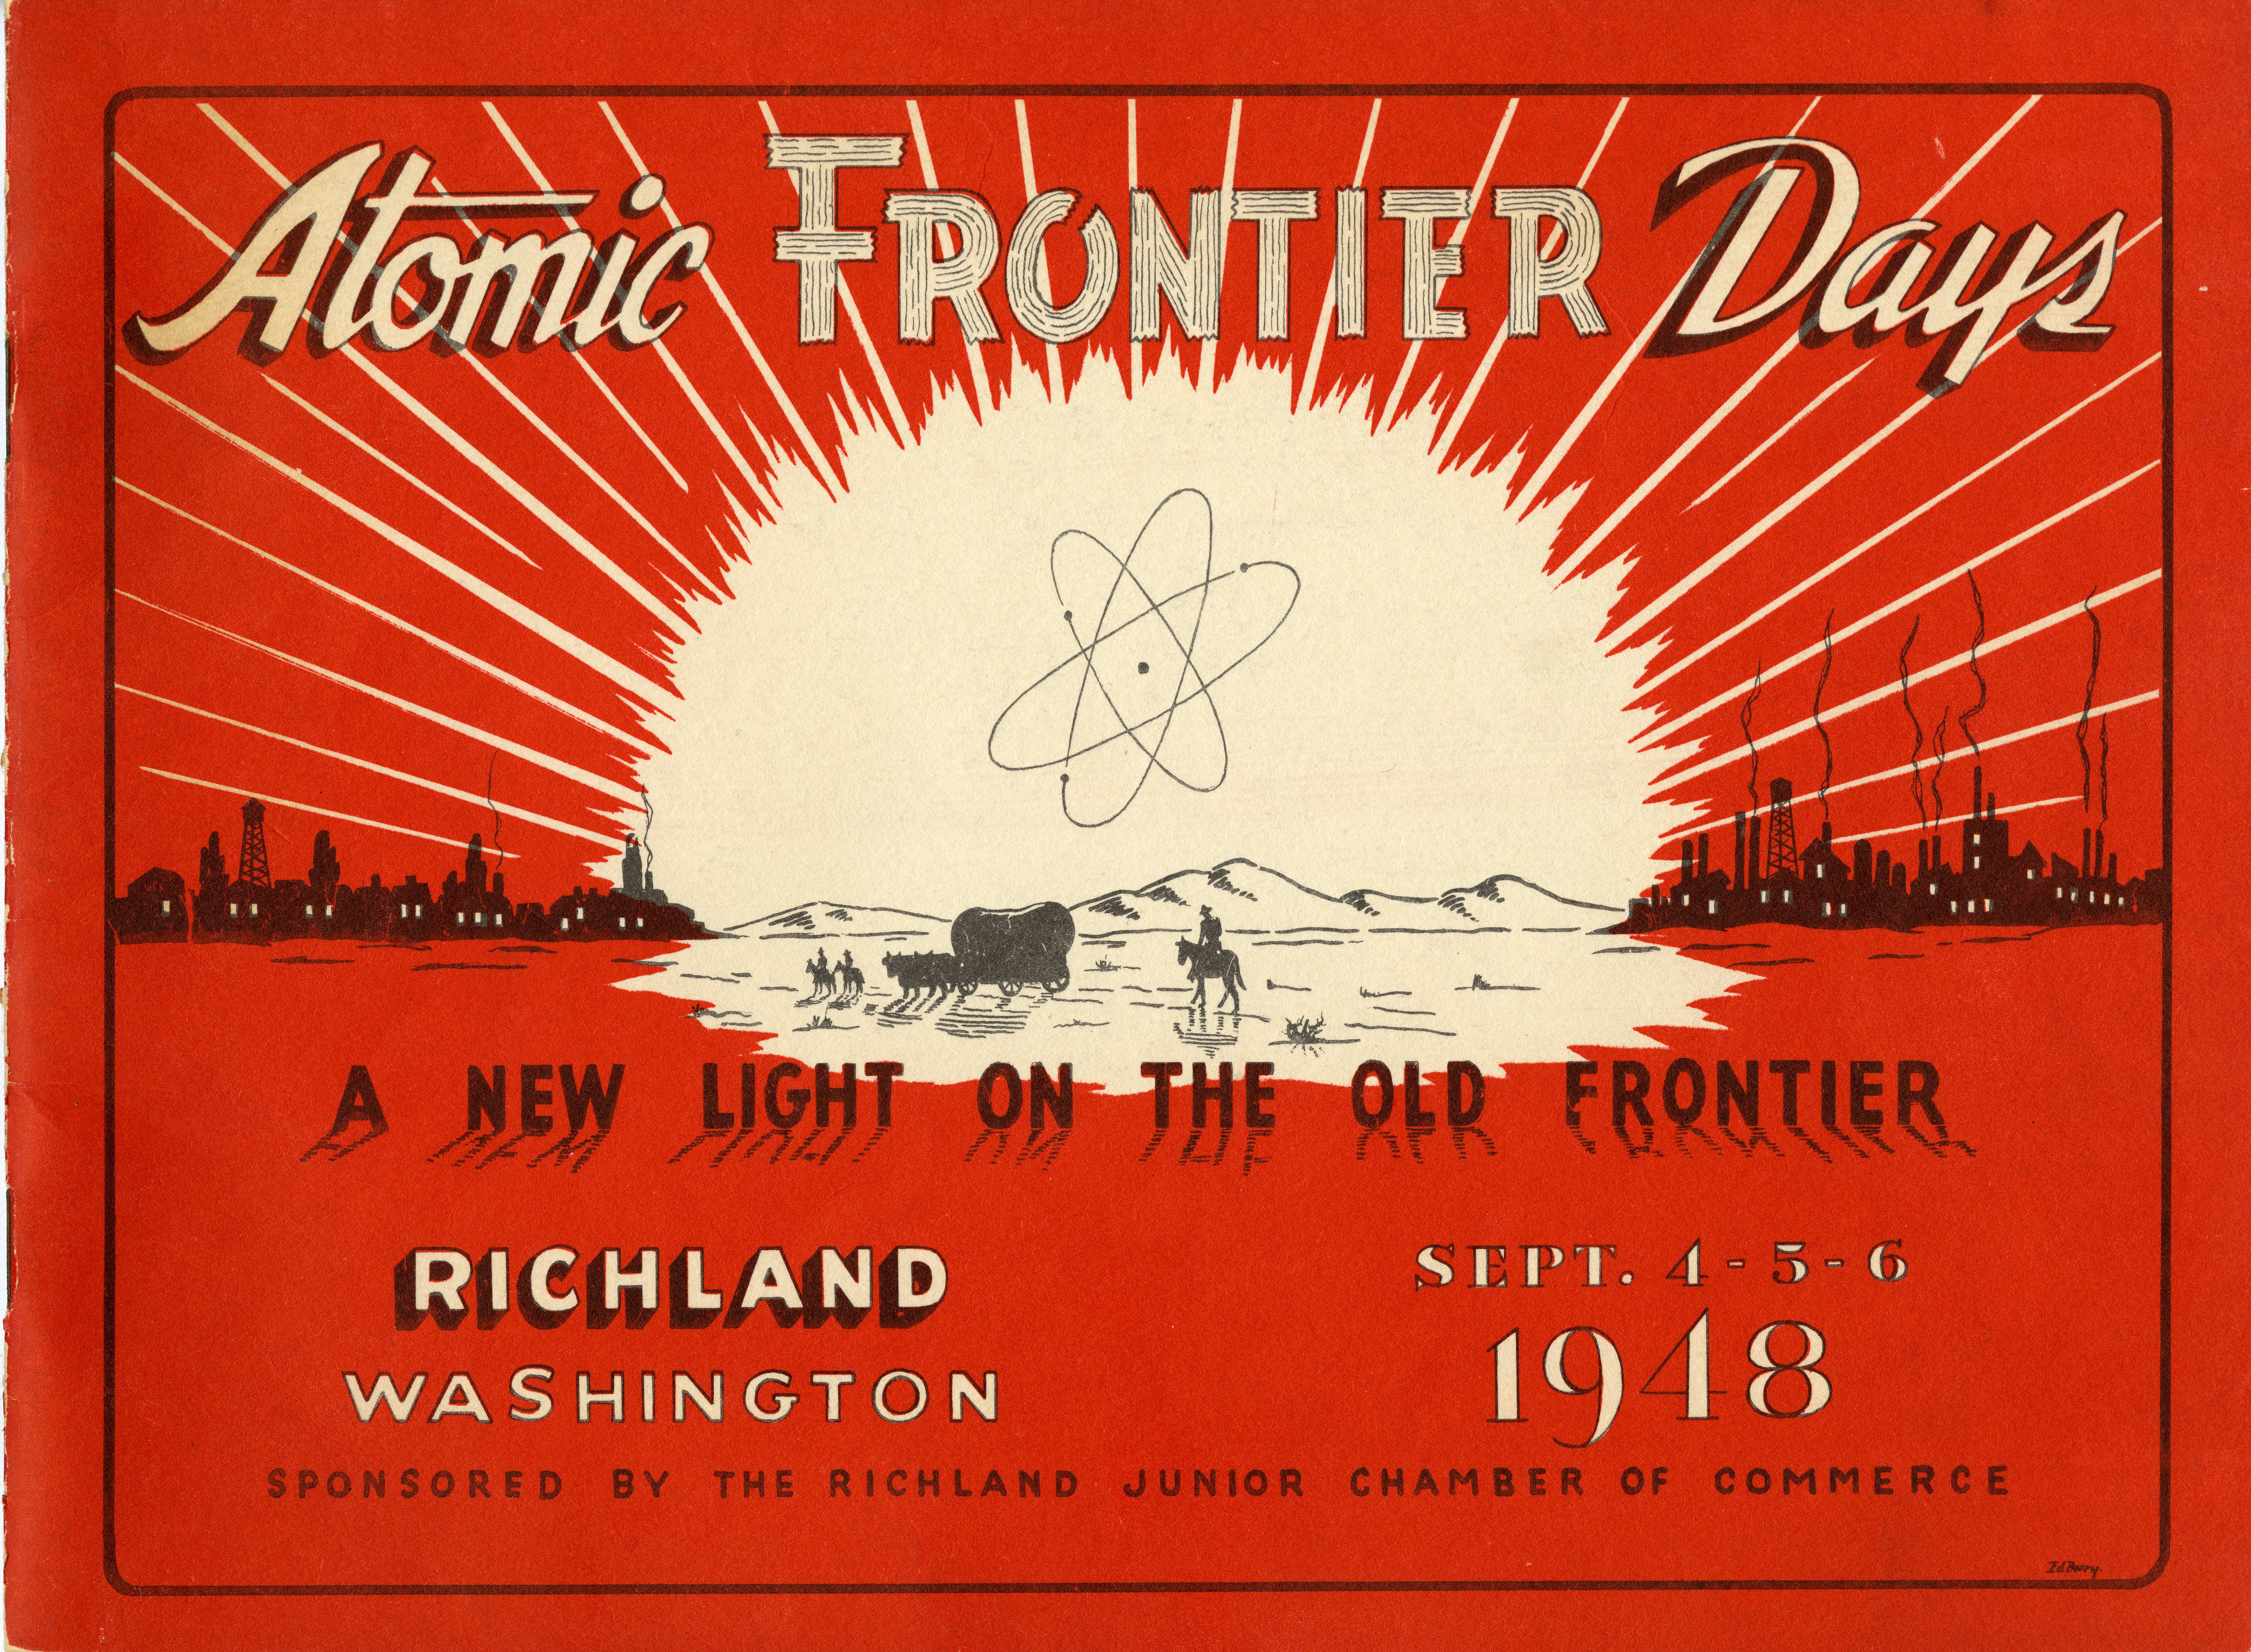 8.4-Atomic-Frontier-Days_HR